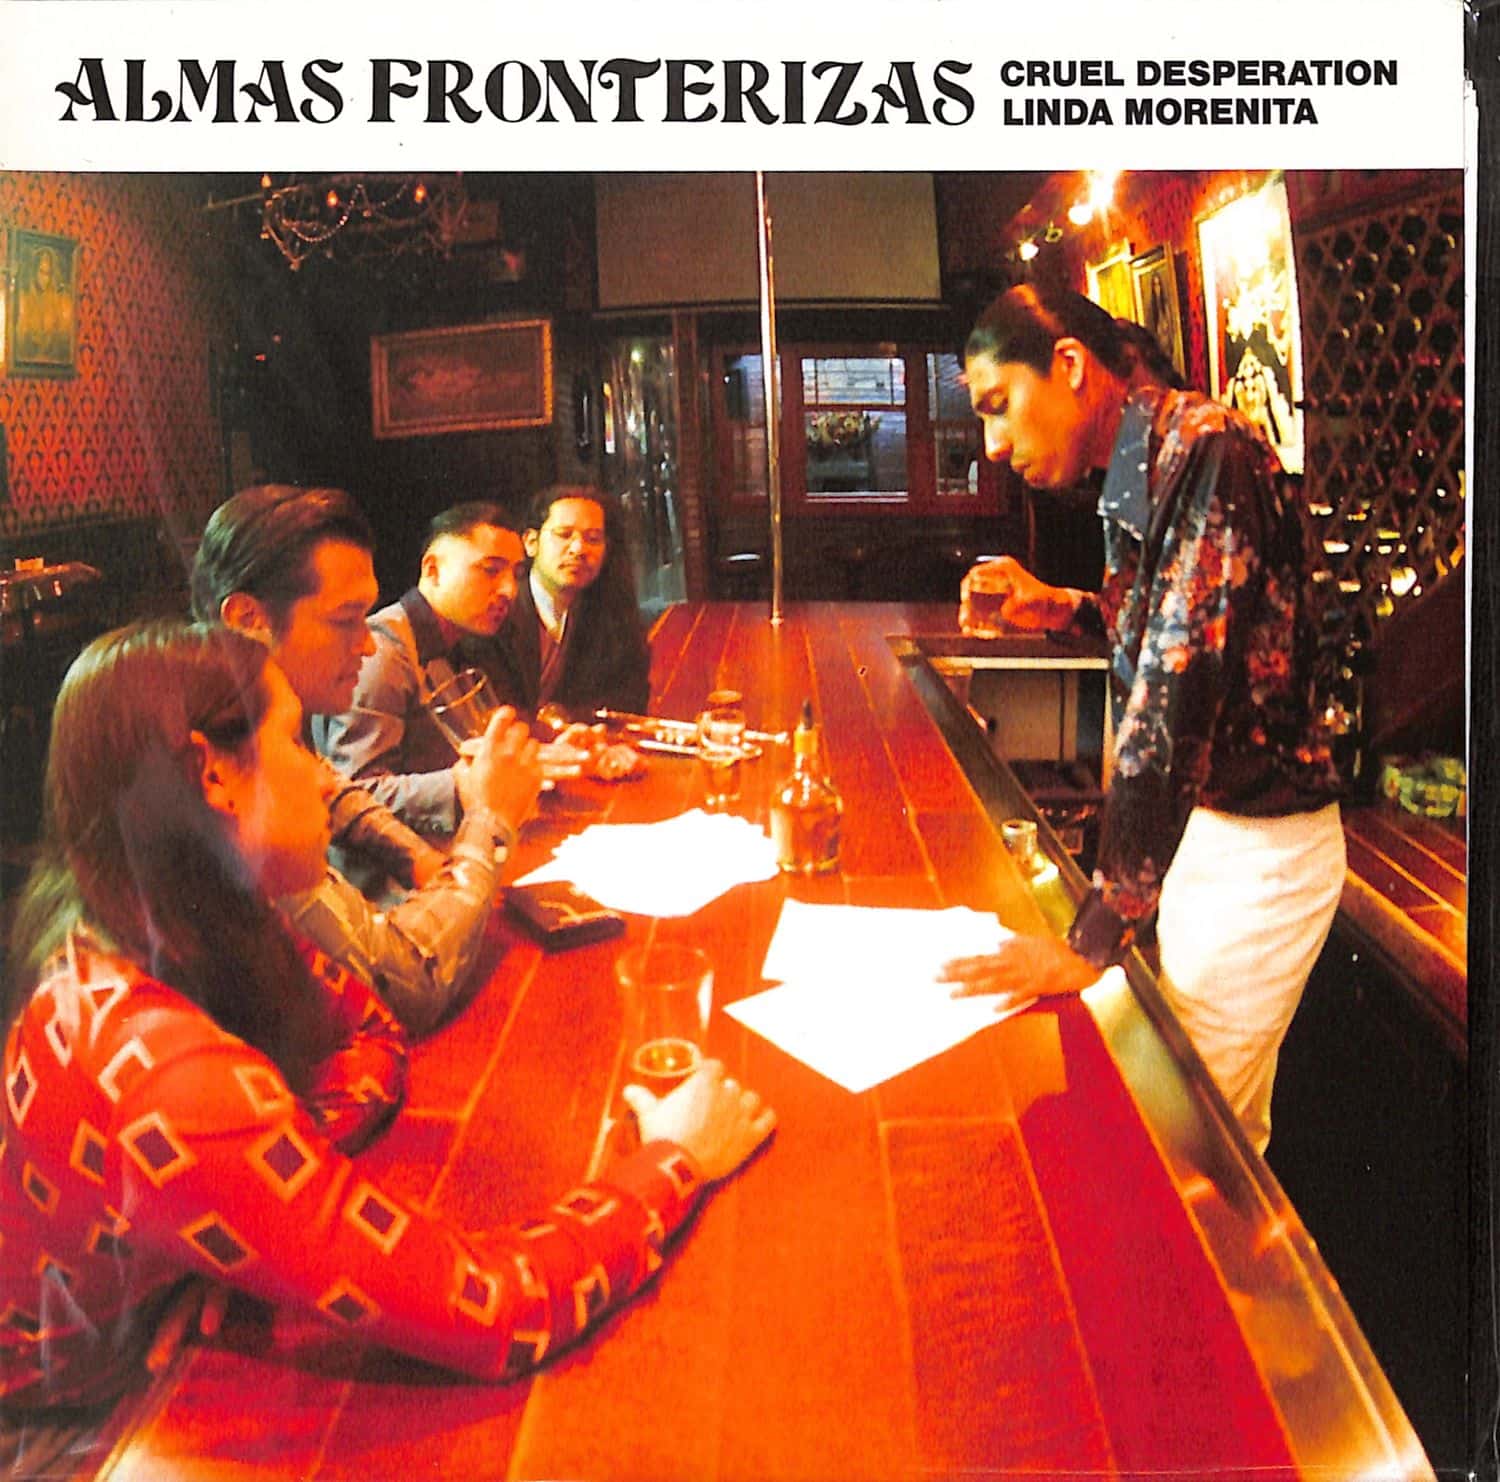 Almas Fronterizas - CRUEL DESPERATION 